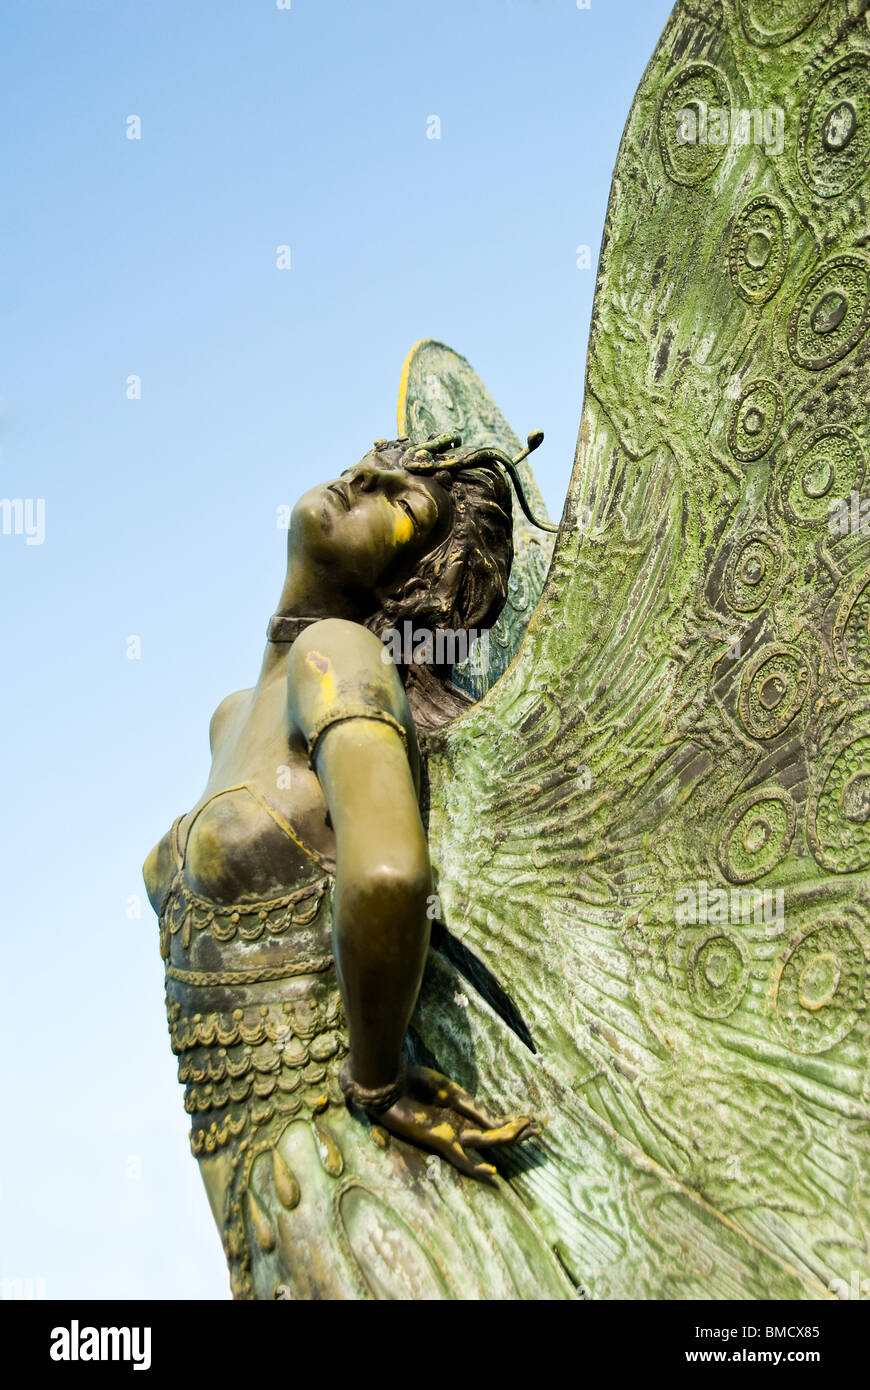 La Dame aux papillons, sculpture en bronze par Moreau août dans le théâtre et Arts District de Sarasota, Floride, USA Banque D'Images